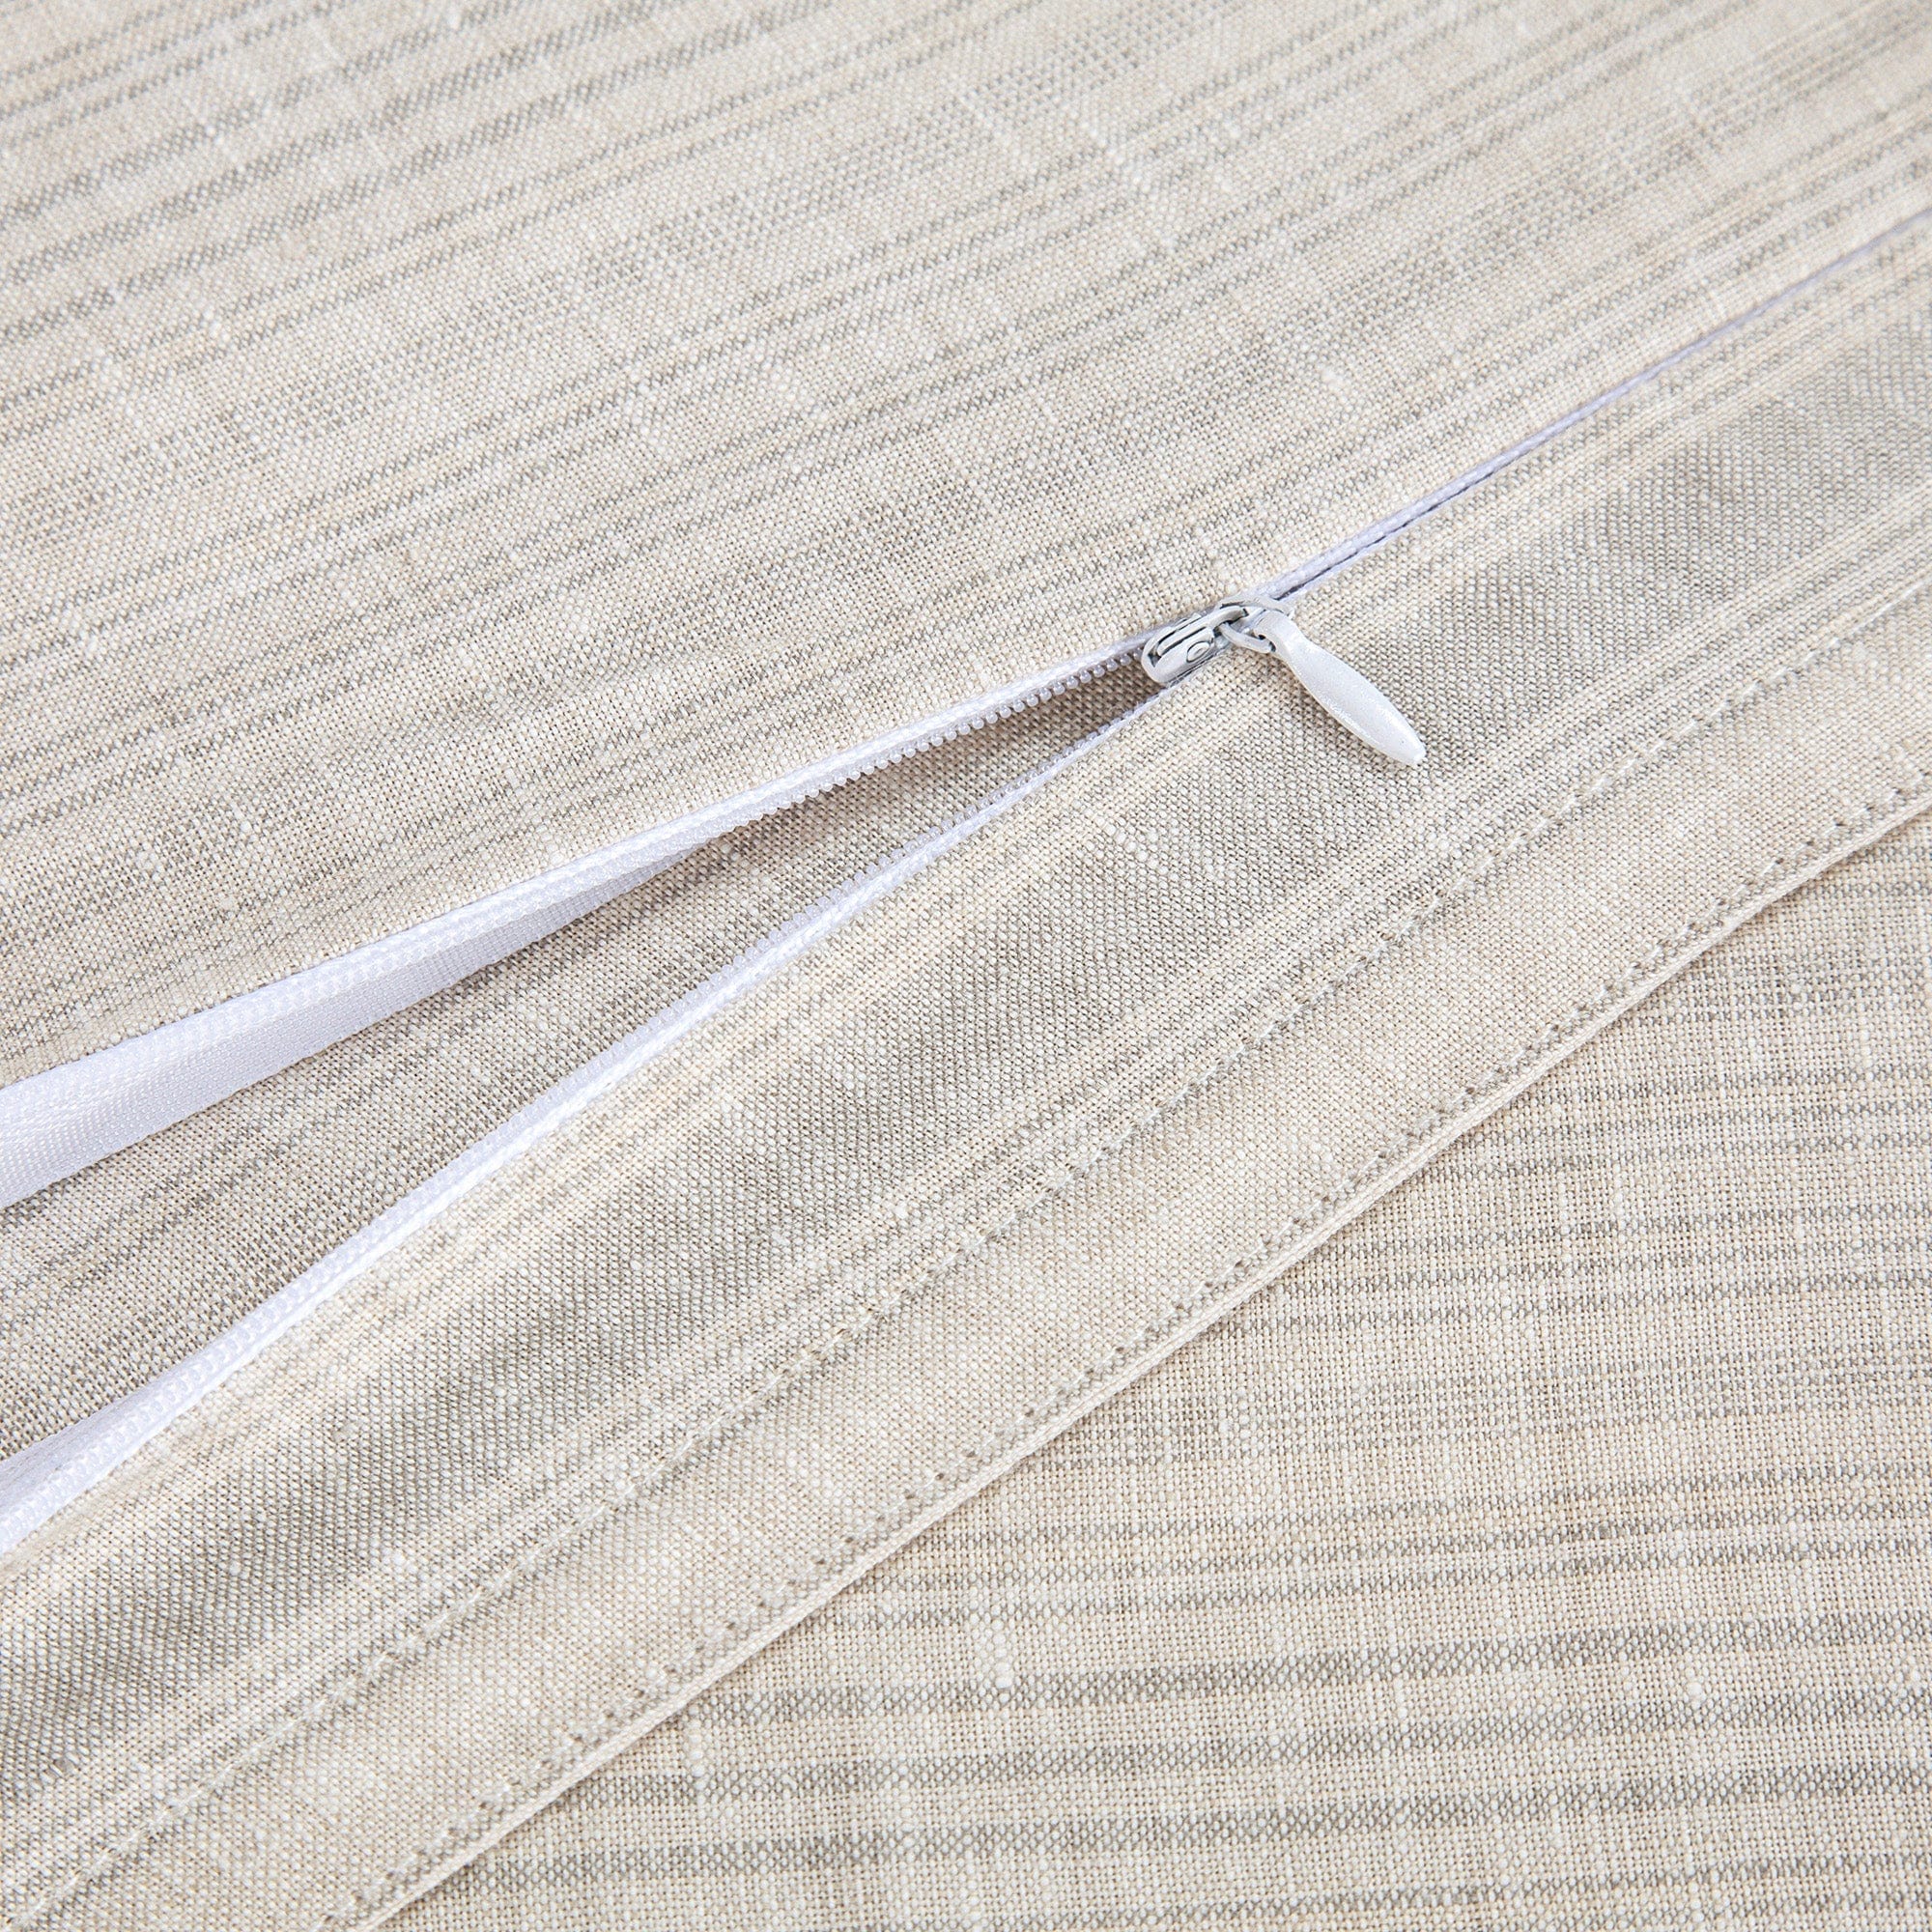 100% French Flax Linen Variegated Stripe Duvet Cover Set Duvet Cover